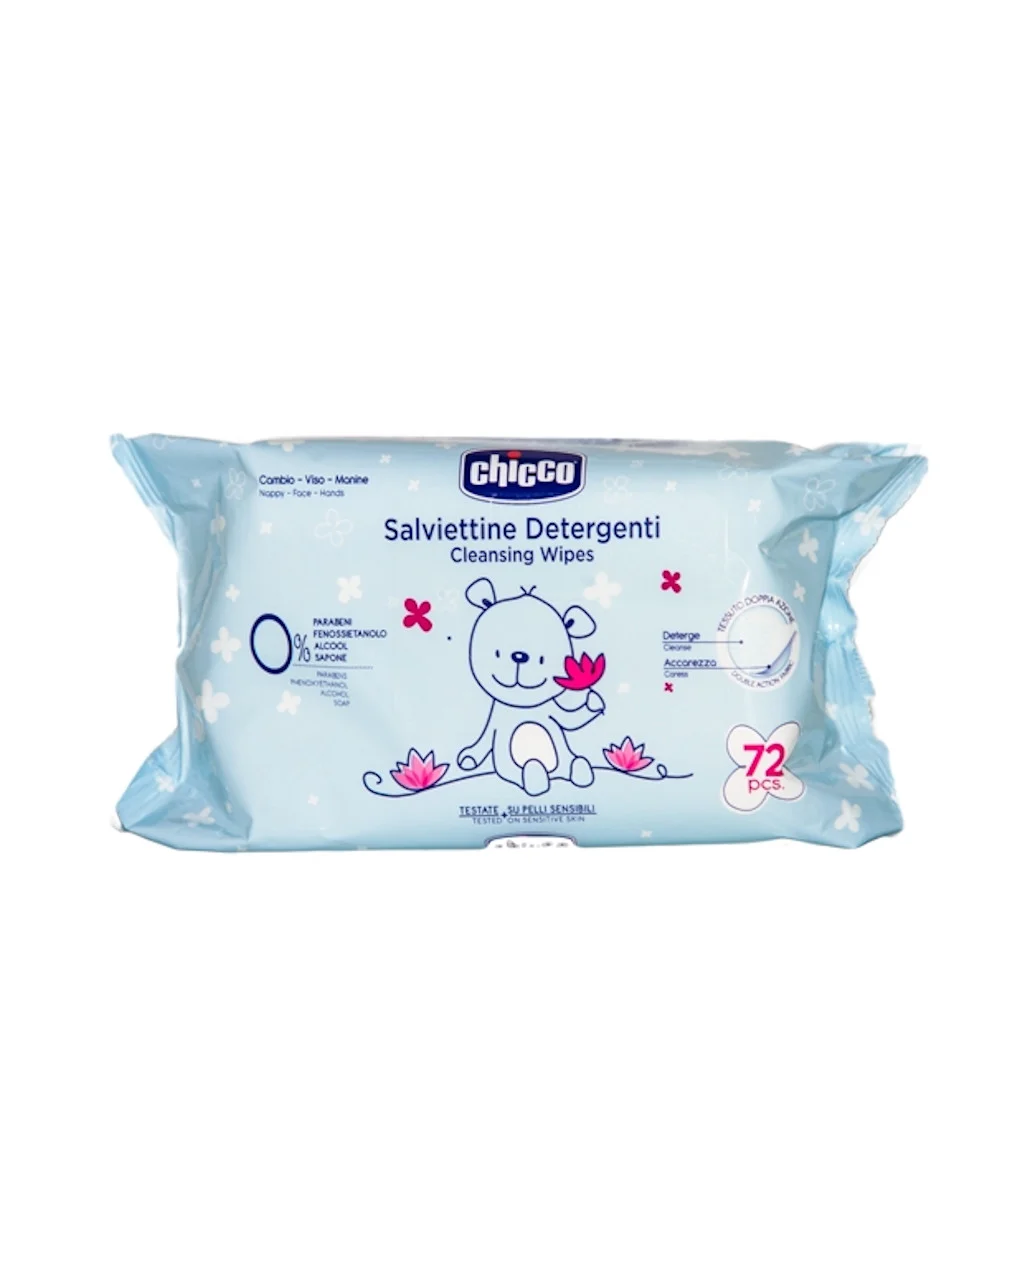 Chicco salviette detergenti 72 pz (x12) - 